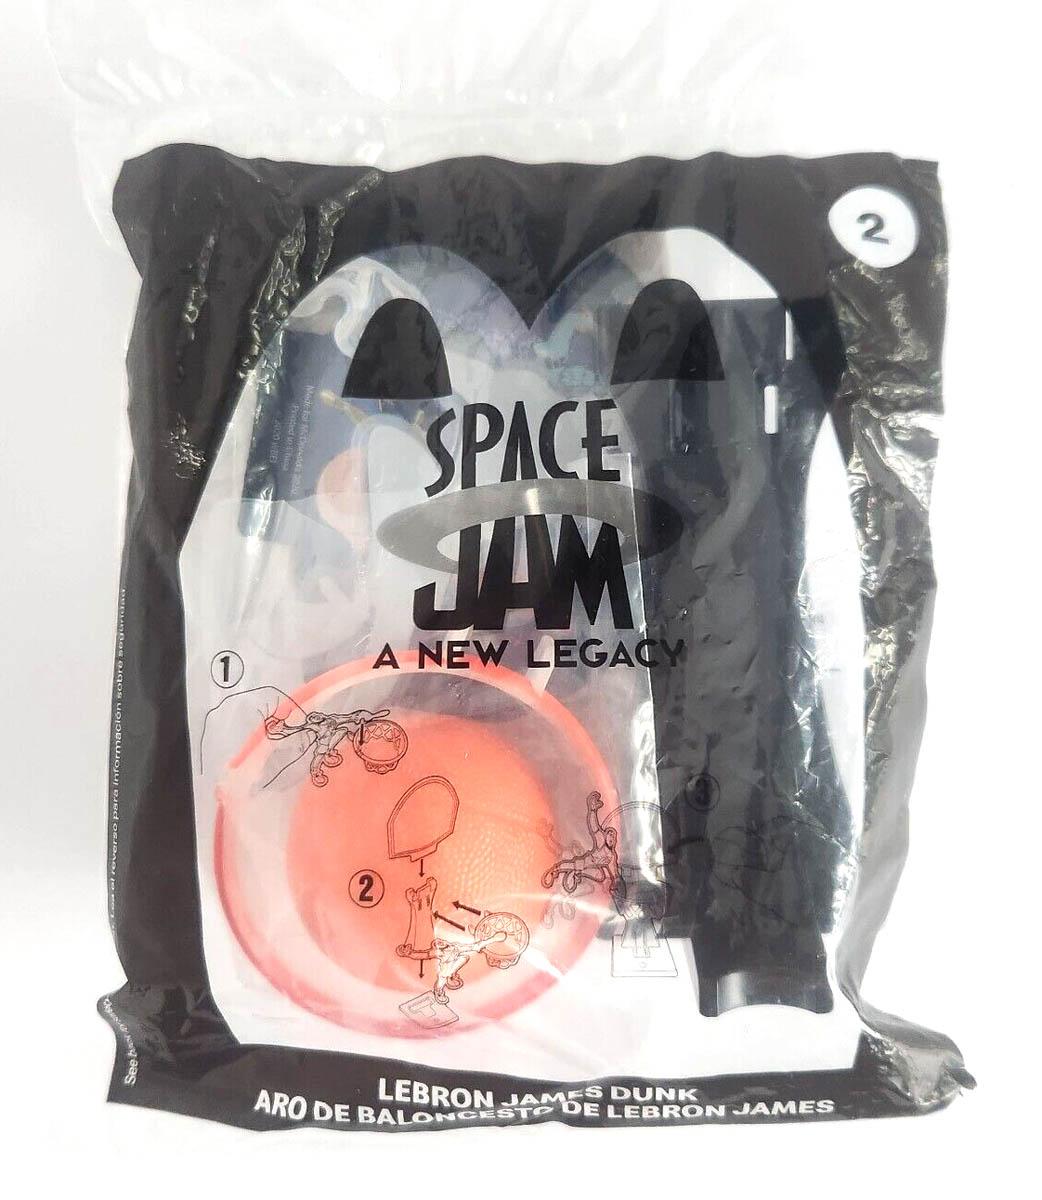 LEBRON JAMES DUNK – Space Jam Toy 2, McDonald’s Meal